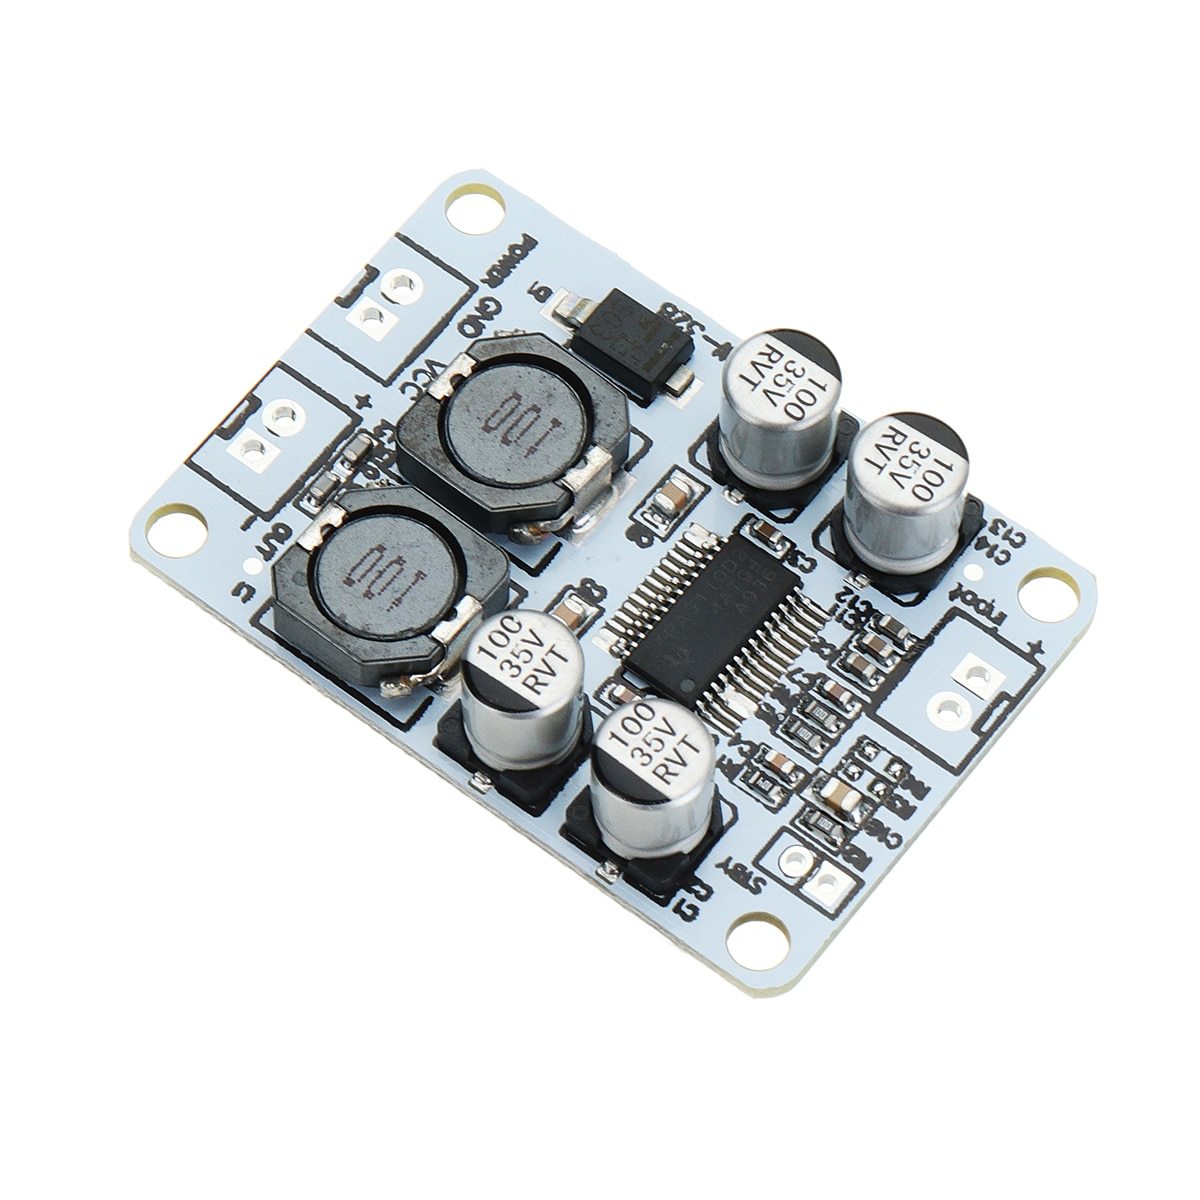 TPA3110-Mono-Channel-Digital-Amplifier-Board-30W-Power-Amplifier-Module-3.jpg